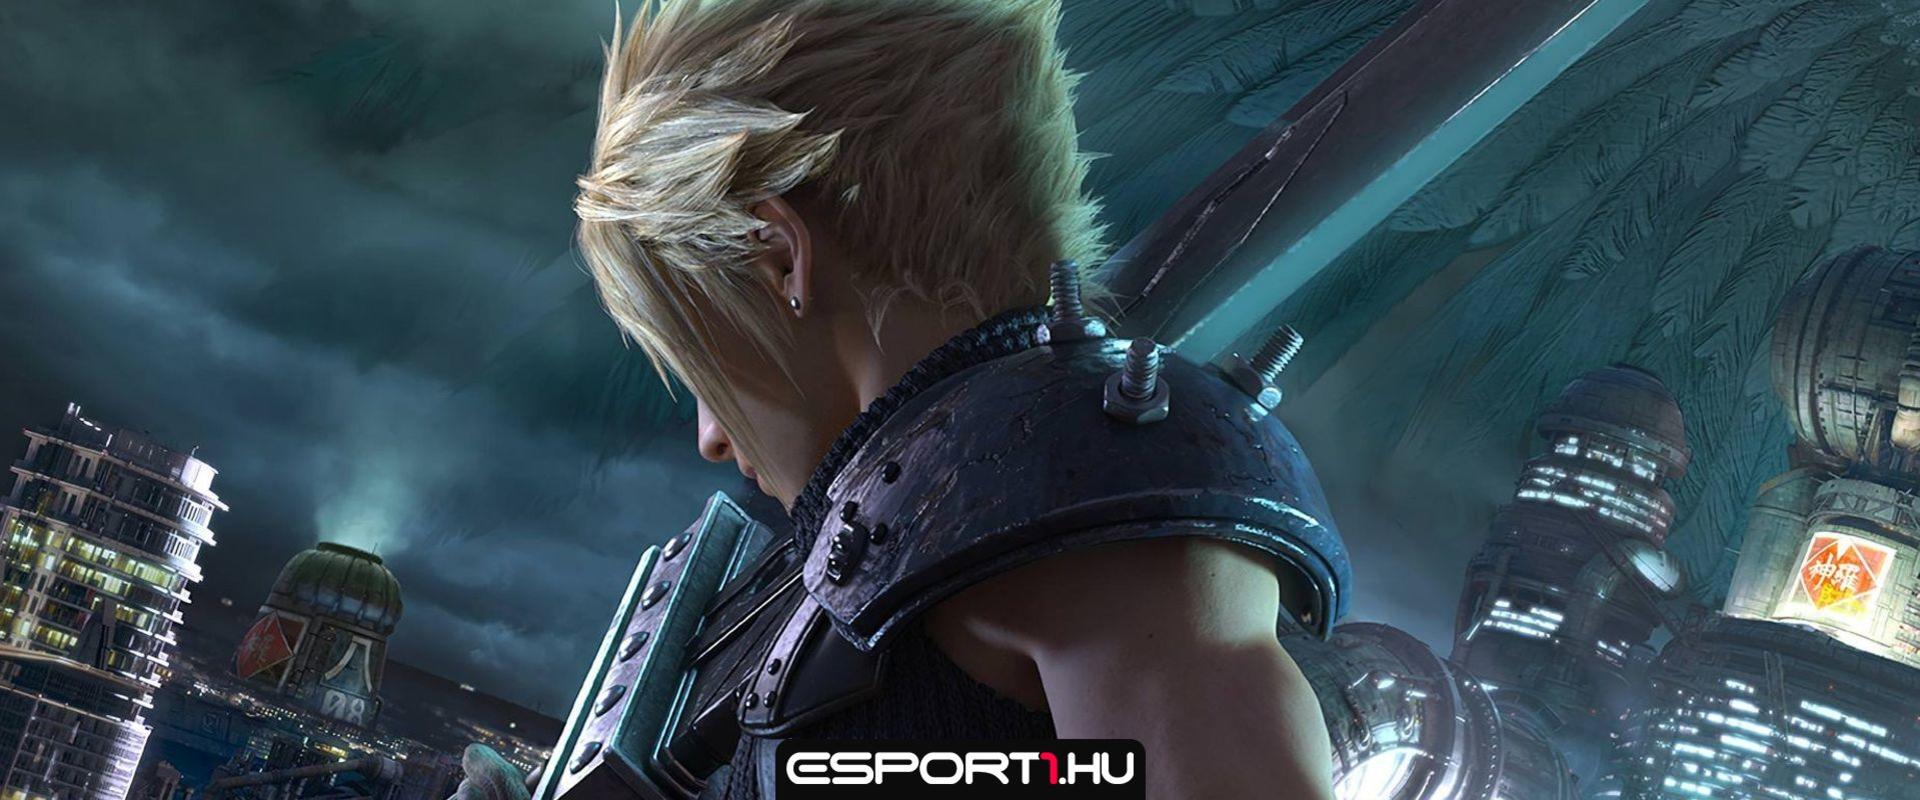 Új infókat tudhattunk meg a Final Fantasy 7 Remake folytatásáról